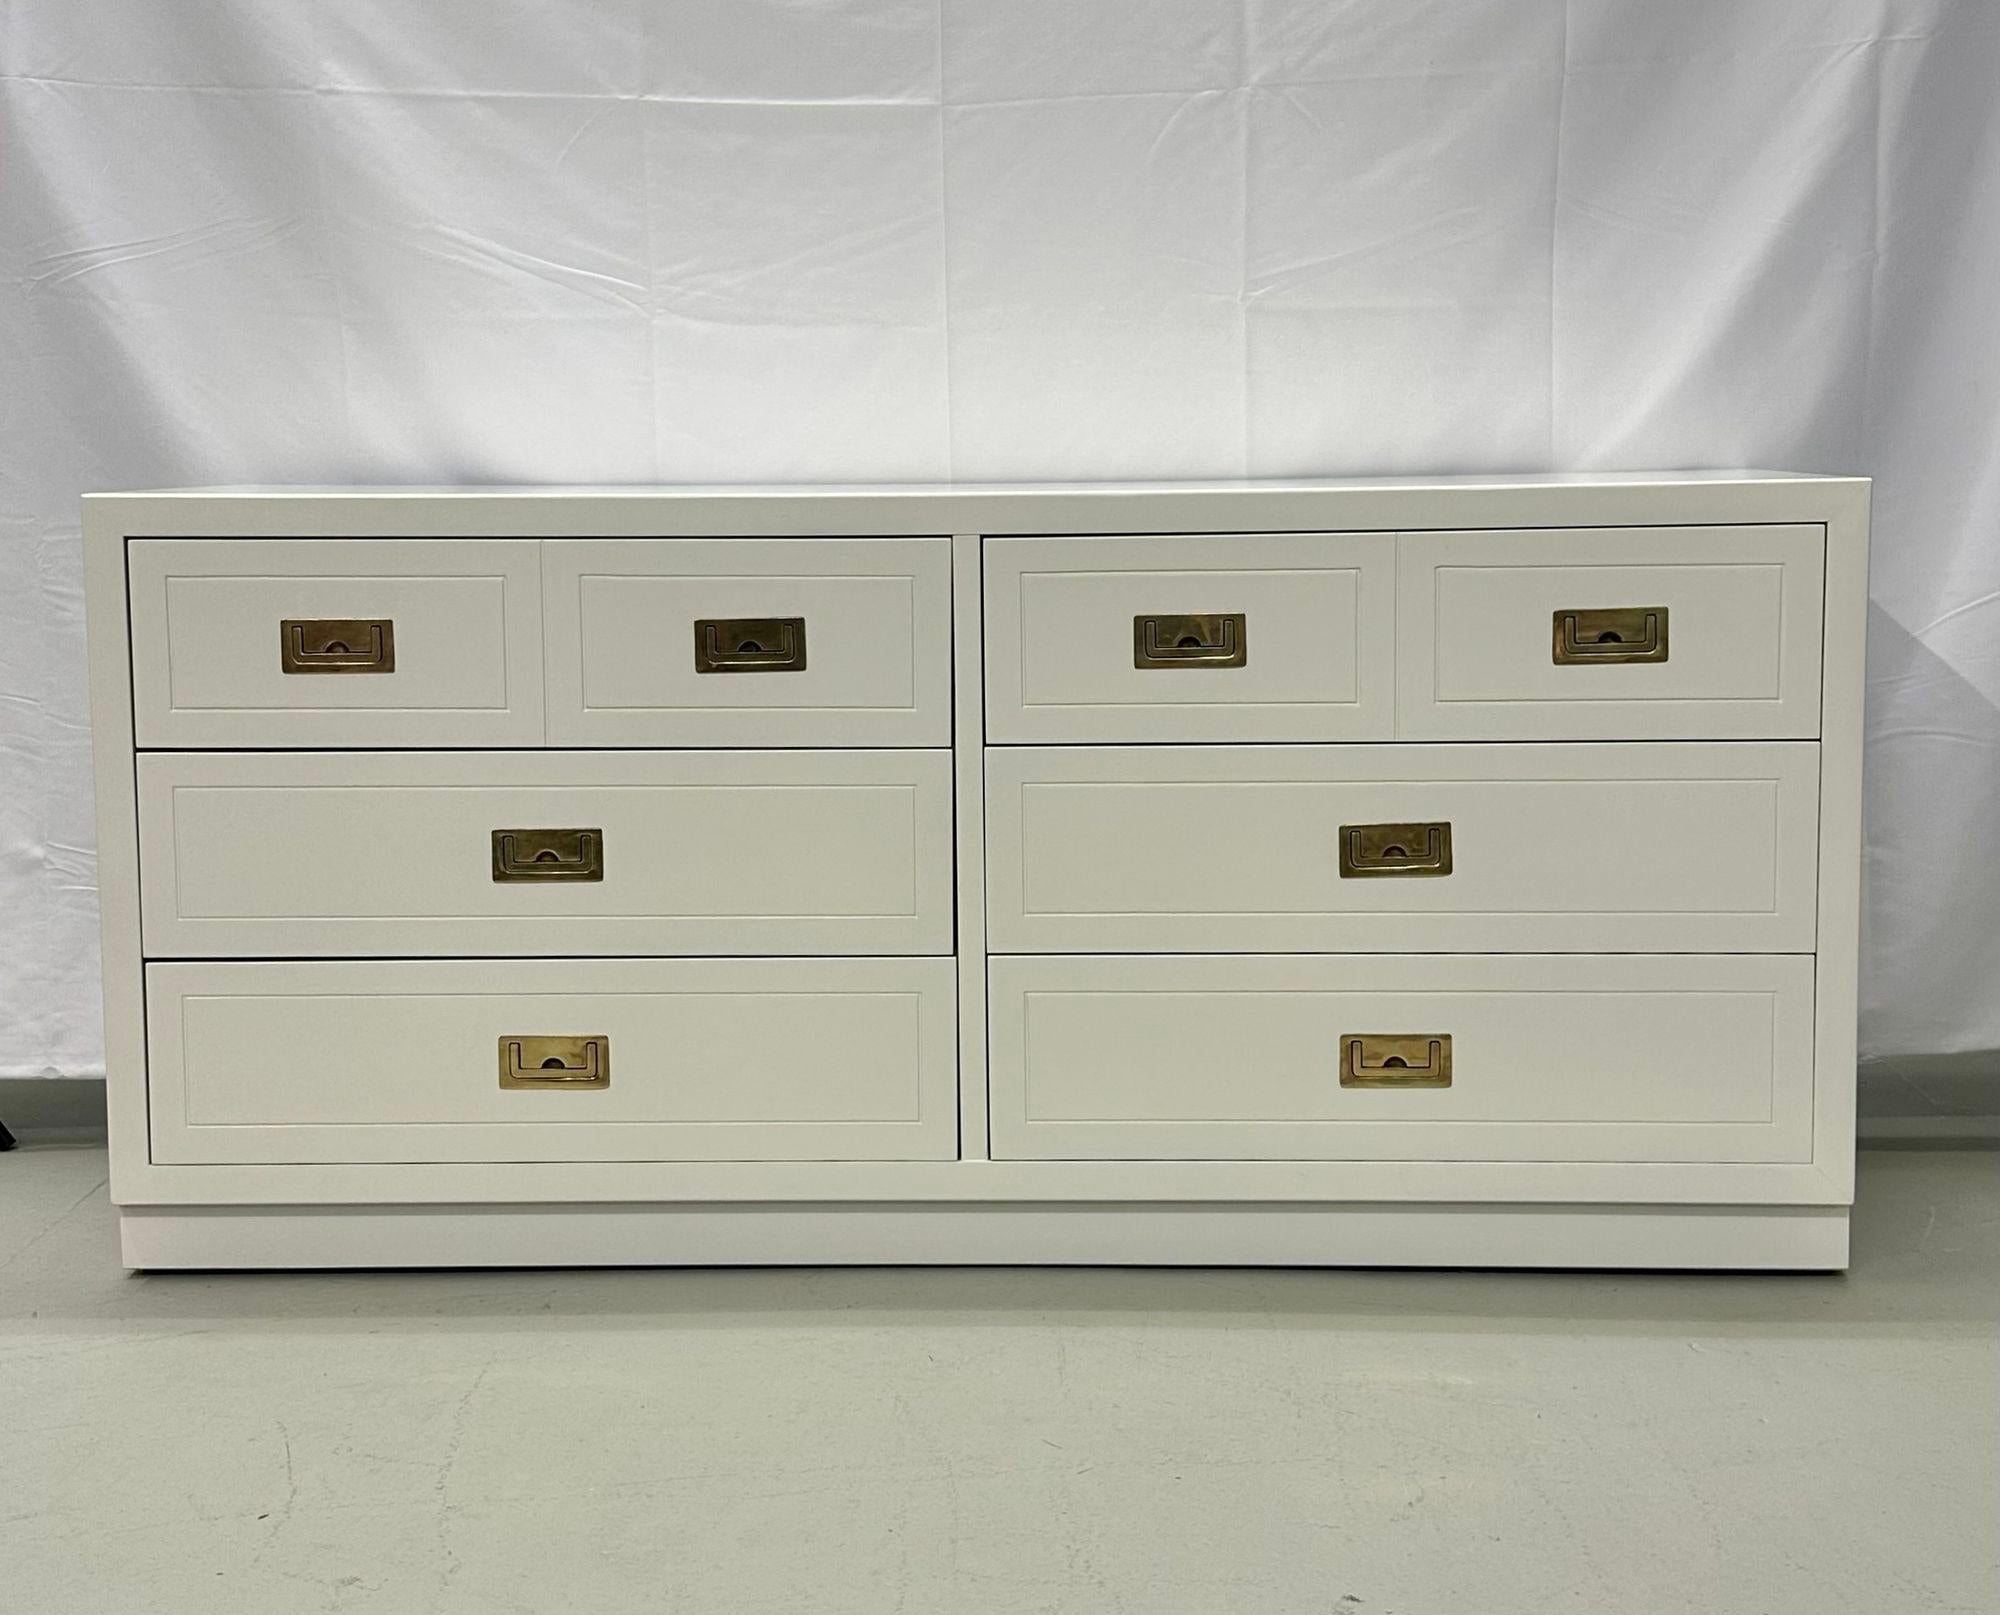 Mid-Century Modern weiß Campaigner Dresser / Kommode, Amerika, Messing.
Ein schönes Beispiel für ein Campaigner-Möbel, das weiß lackiert ist. Das Gehäuse hat neun Schubladen, die alle mit versteckten Messinggriffen versehen sind und auf einem